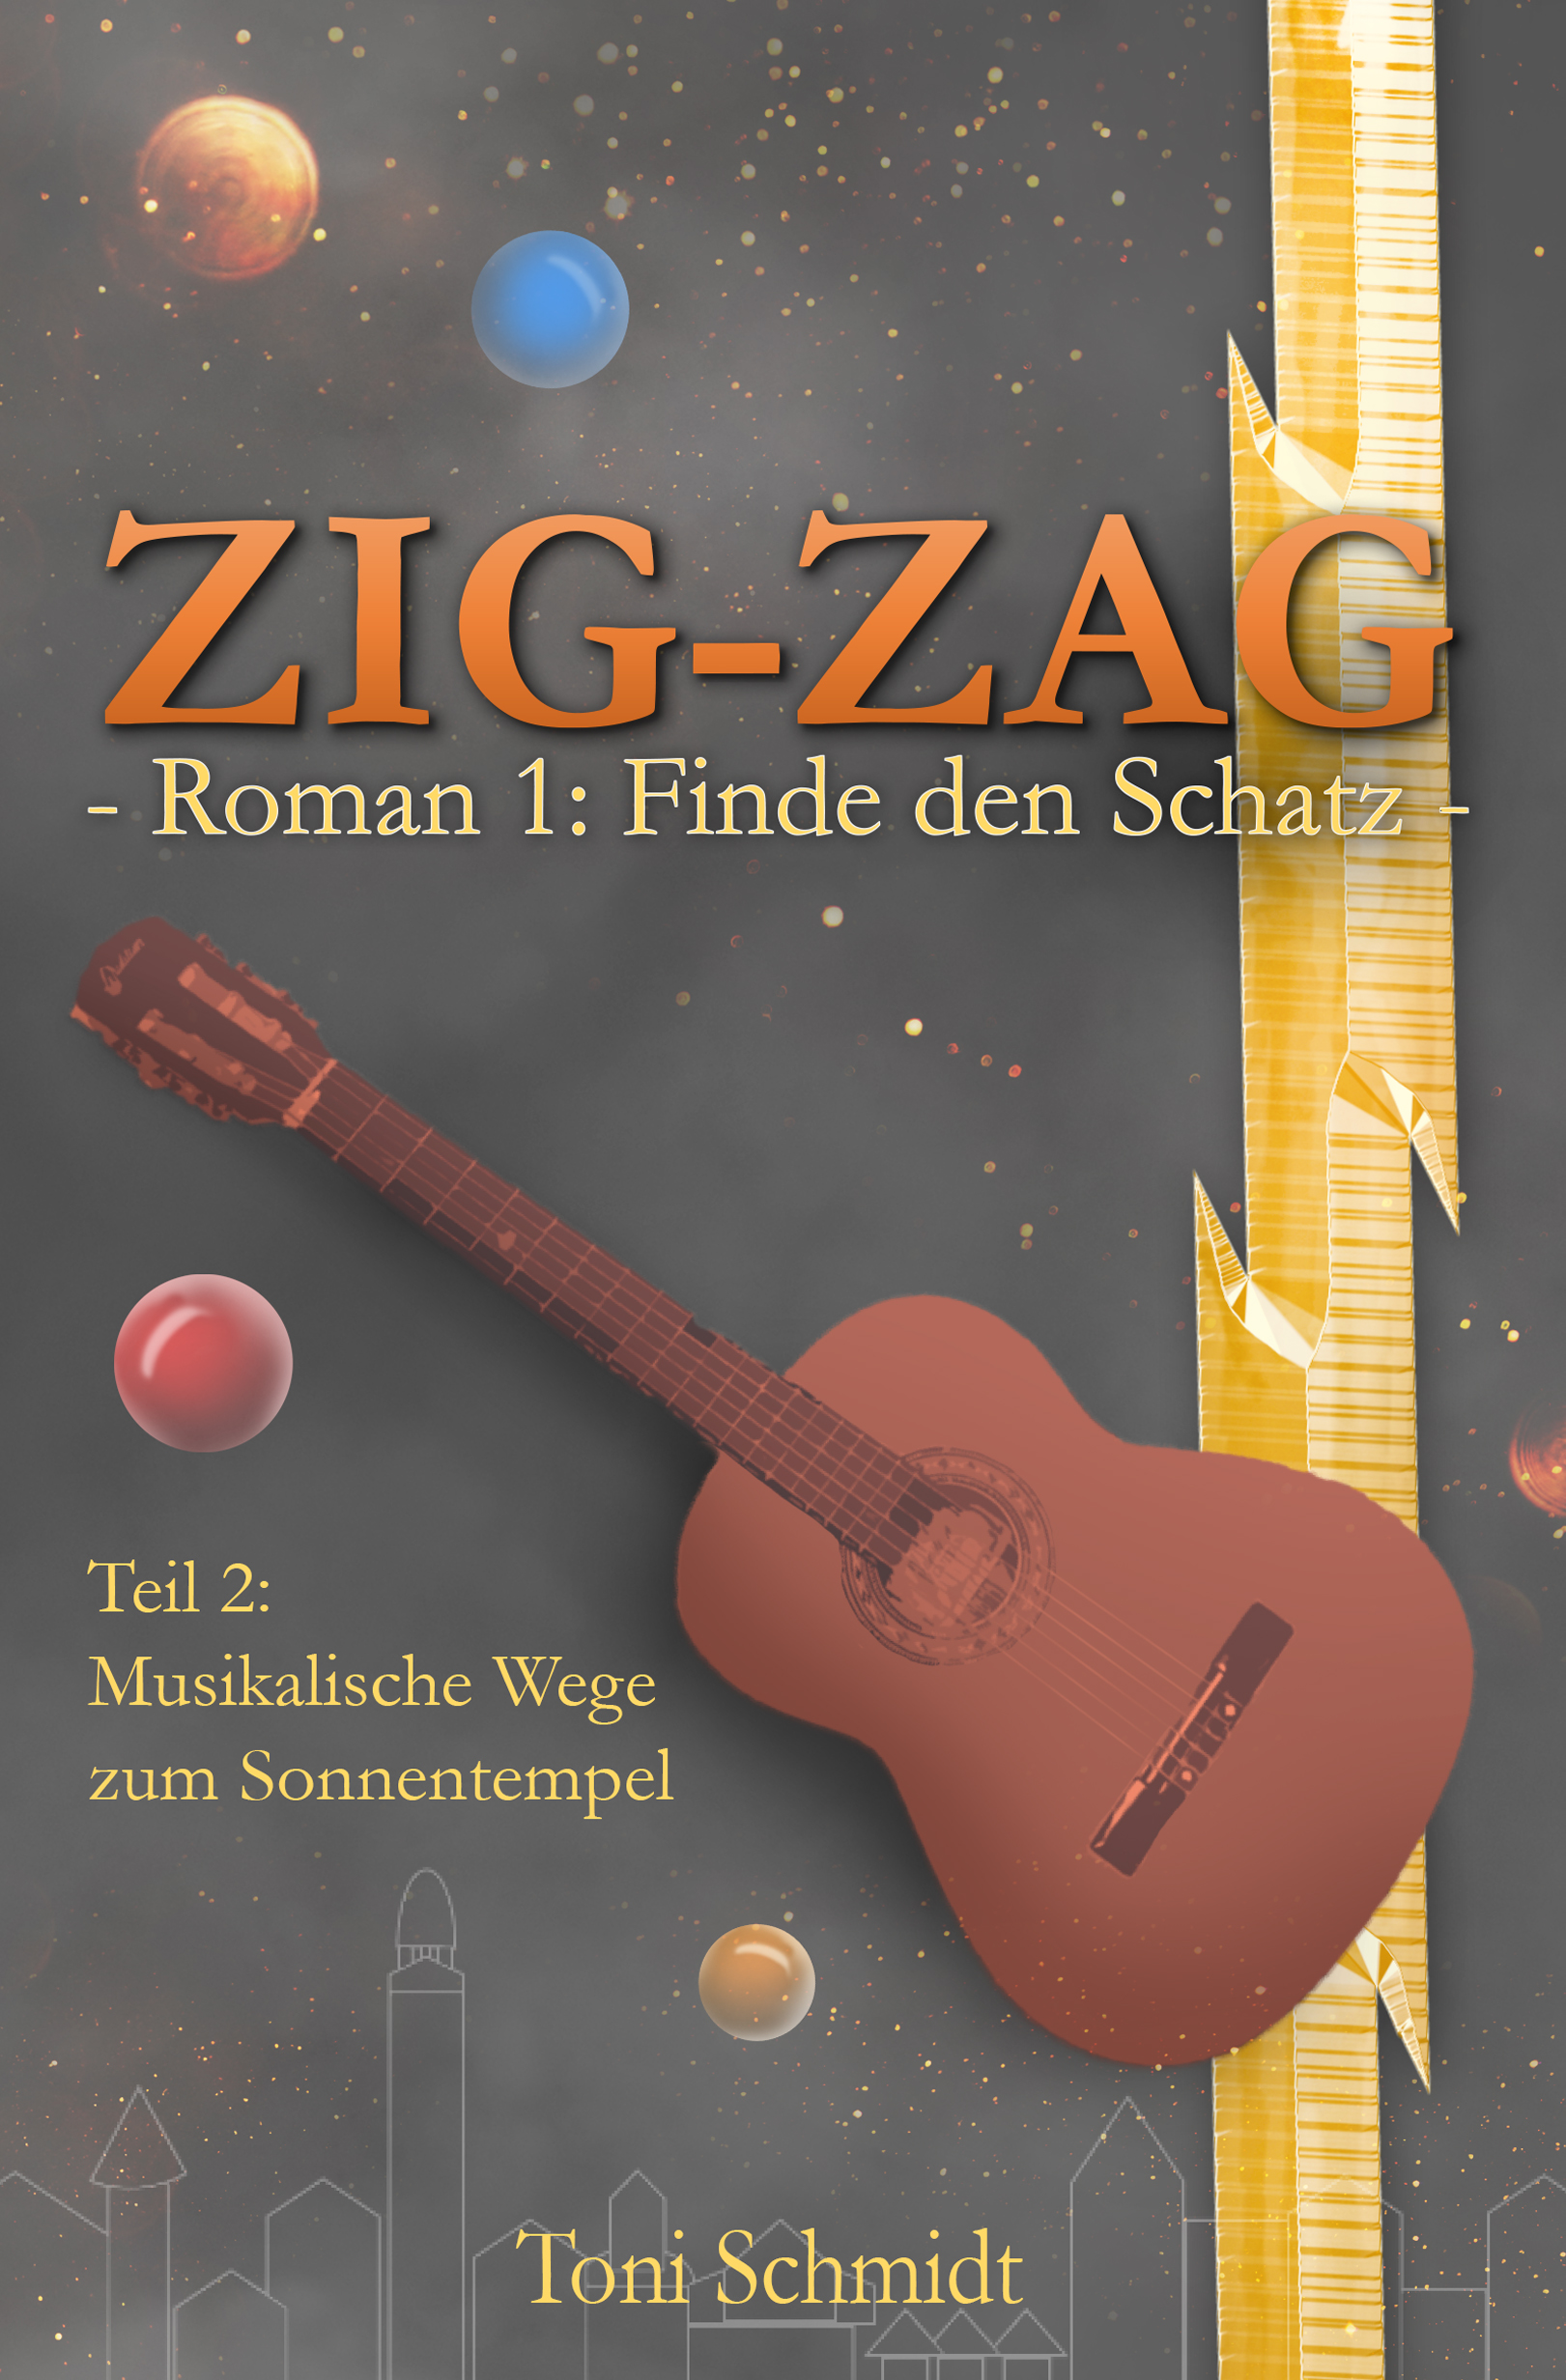 ZIG-ZAG Roman 1: Finde den Schatz – Teil 2 Musikalische Wege zum Sonnentempel